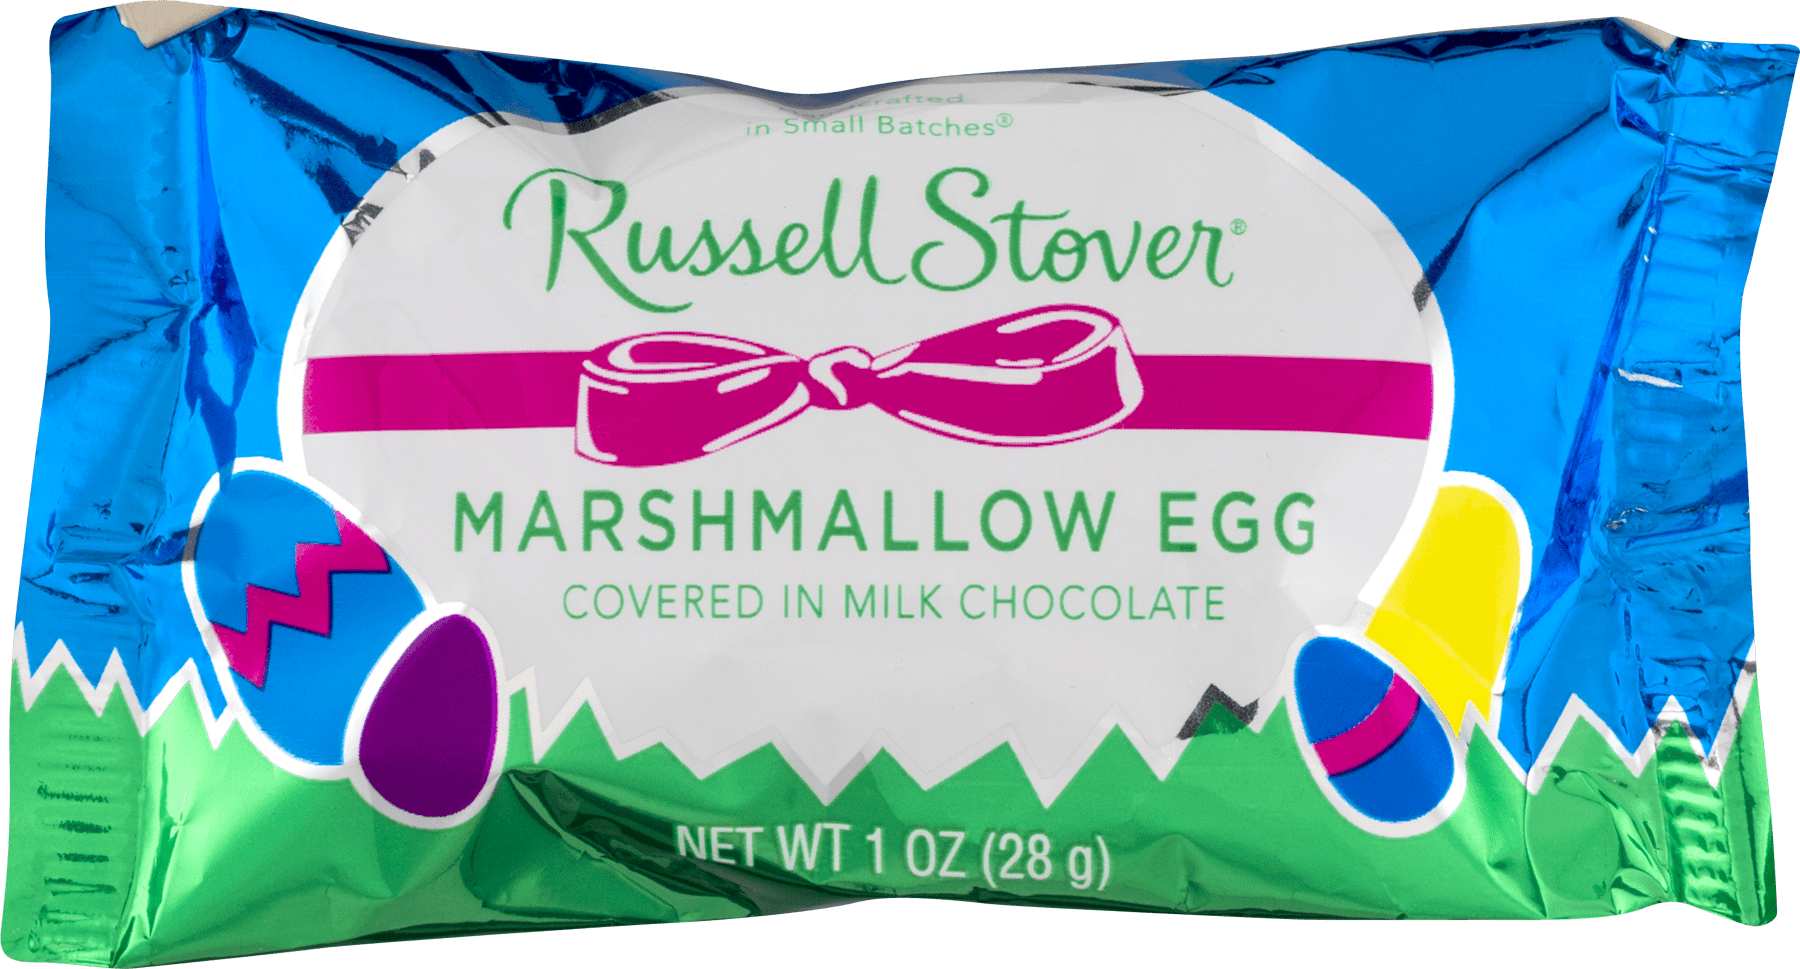 1376円 人気沸騰ブラドン ラッセルストーバーマシュマロの卵をミルクチョコレートで覆ったもの 6個入り Russell Stover Marshmallow Egg Covered in Milk Chocolate Pack of 6